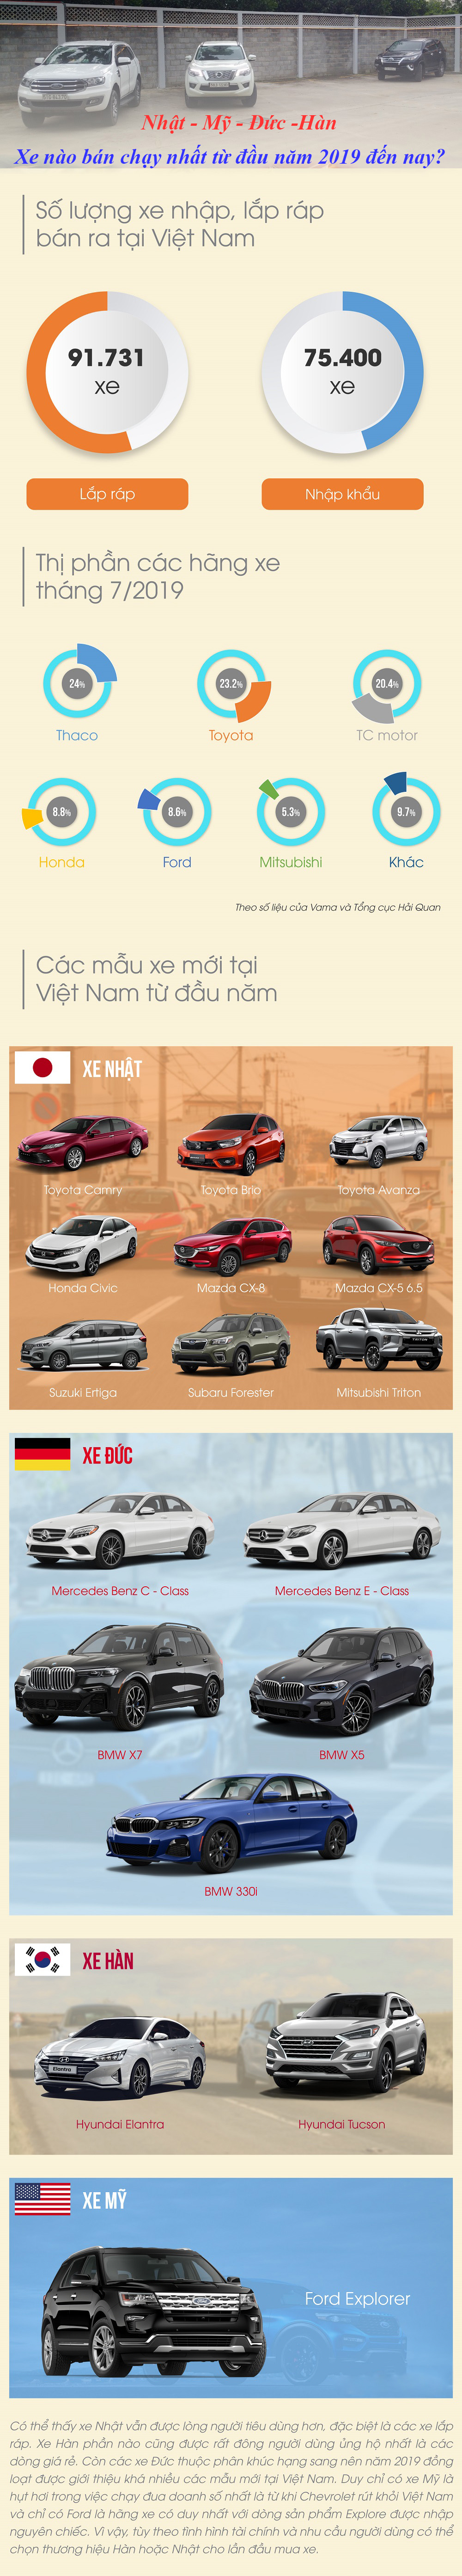 Nhật, Mỹ, Đức, Hàn: Xe nào bán chạy nhất từ đầu năm 2019 đến nay? 1a